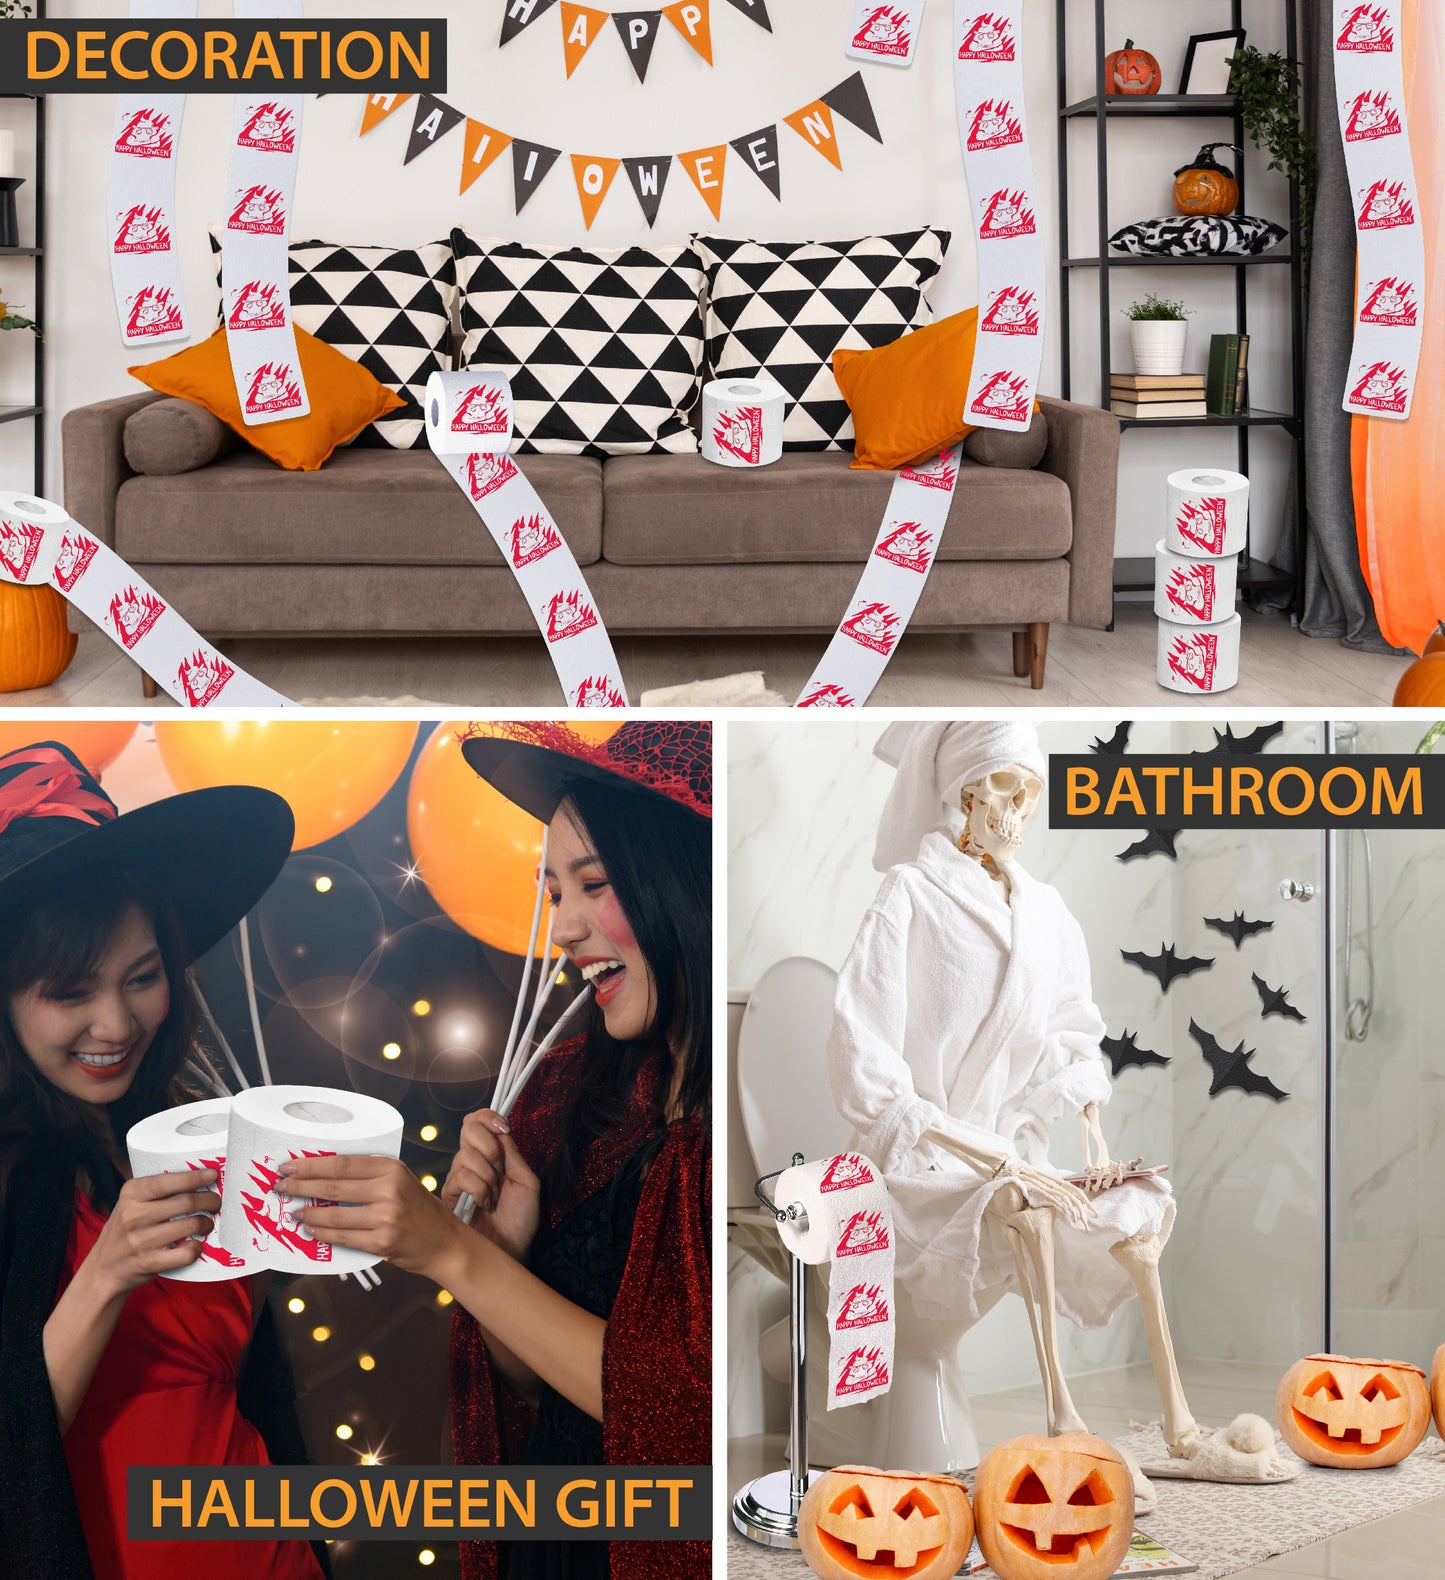 Printed TP Happy Halloween Poop Printed Toilet Paper Gag Gift – 500 Sheets